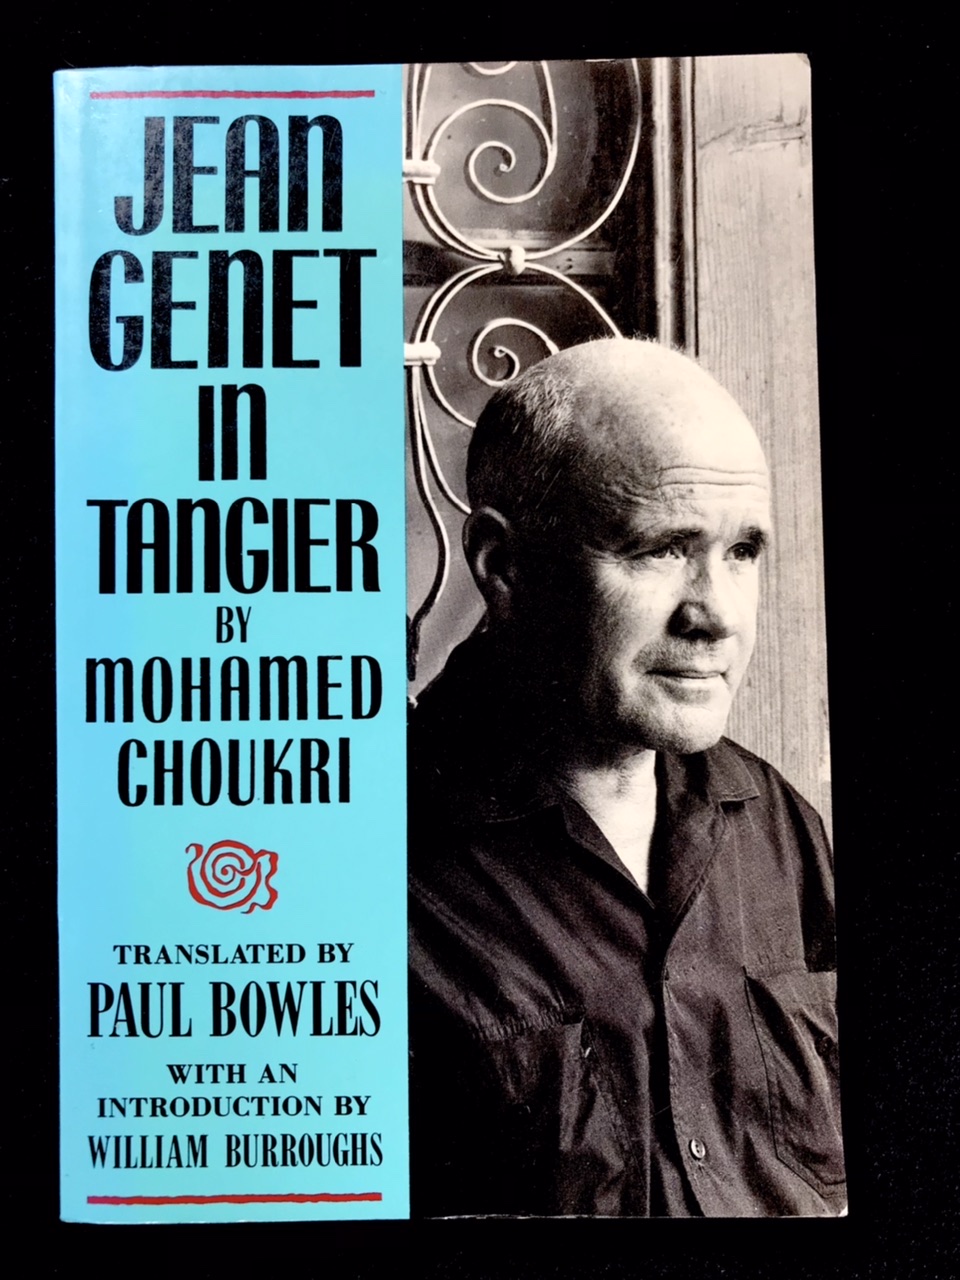 Jean Genet In Tangier by Mohamed Choukri